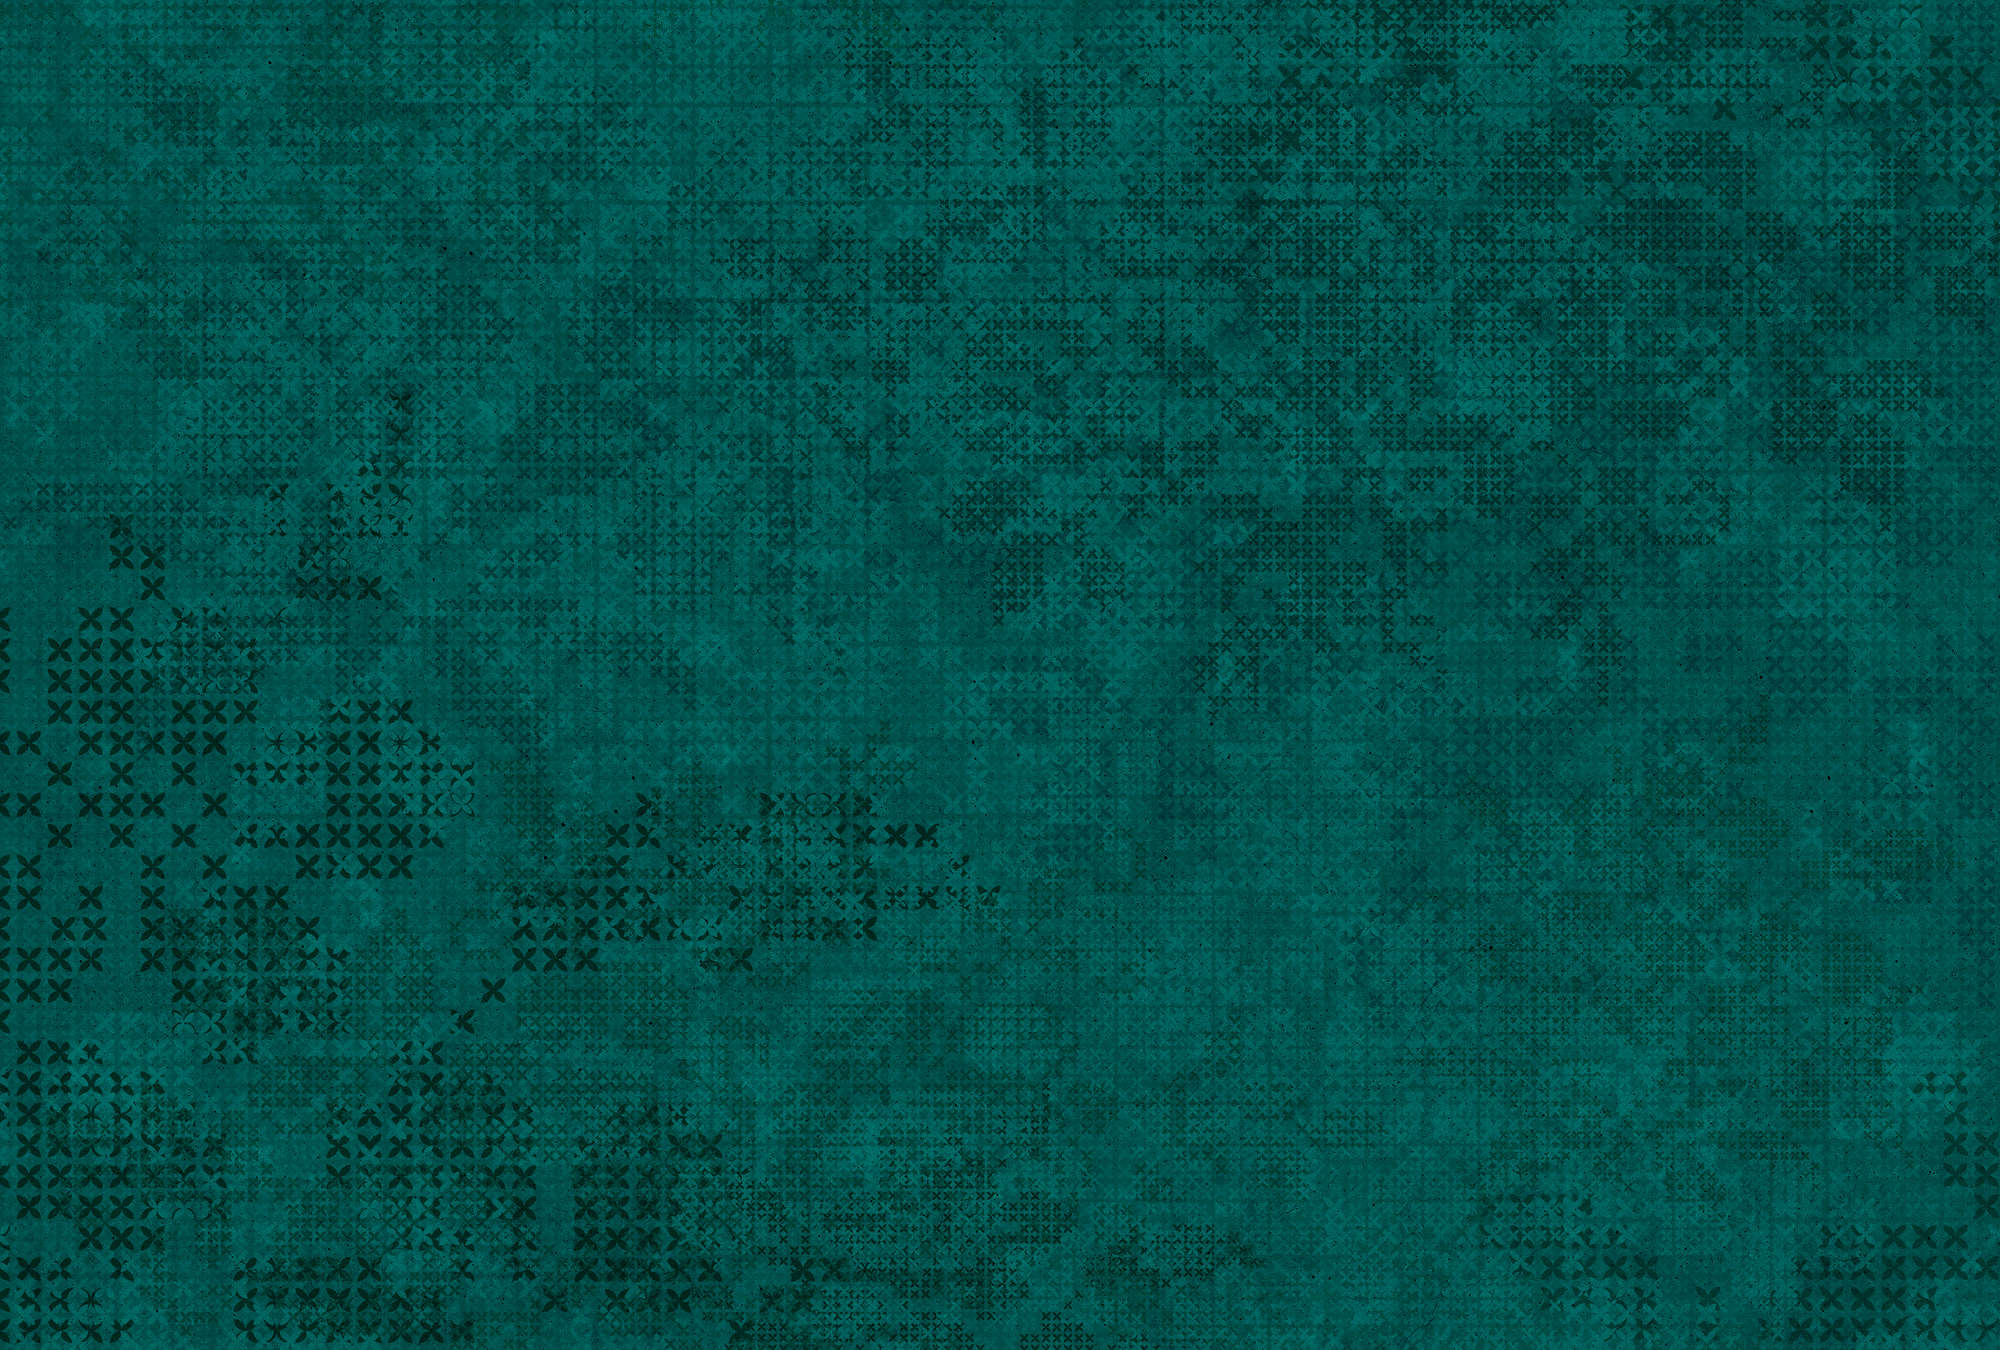             Pixel Style Cross Pattern Wallpaper - Groen, Zwart
        